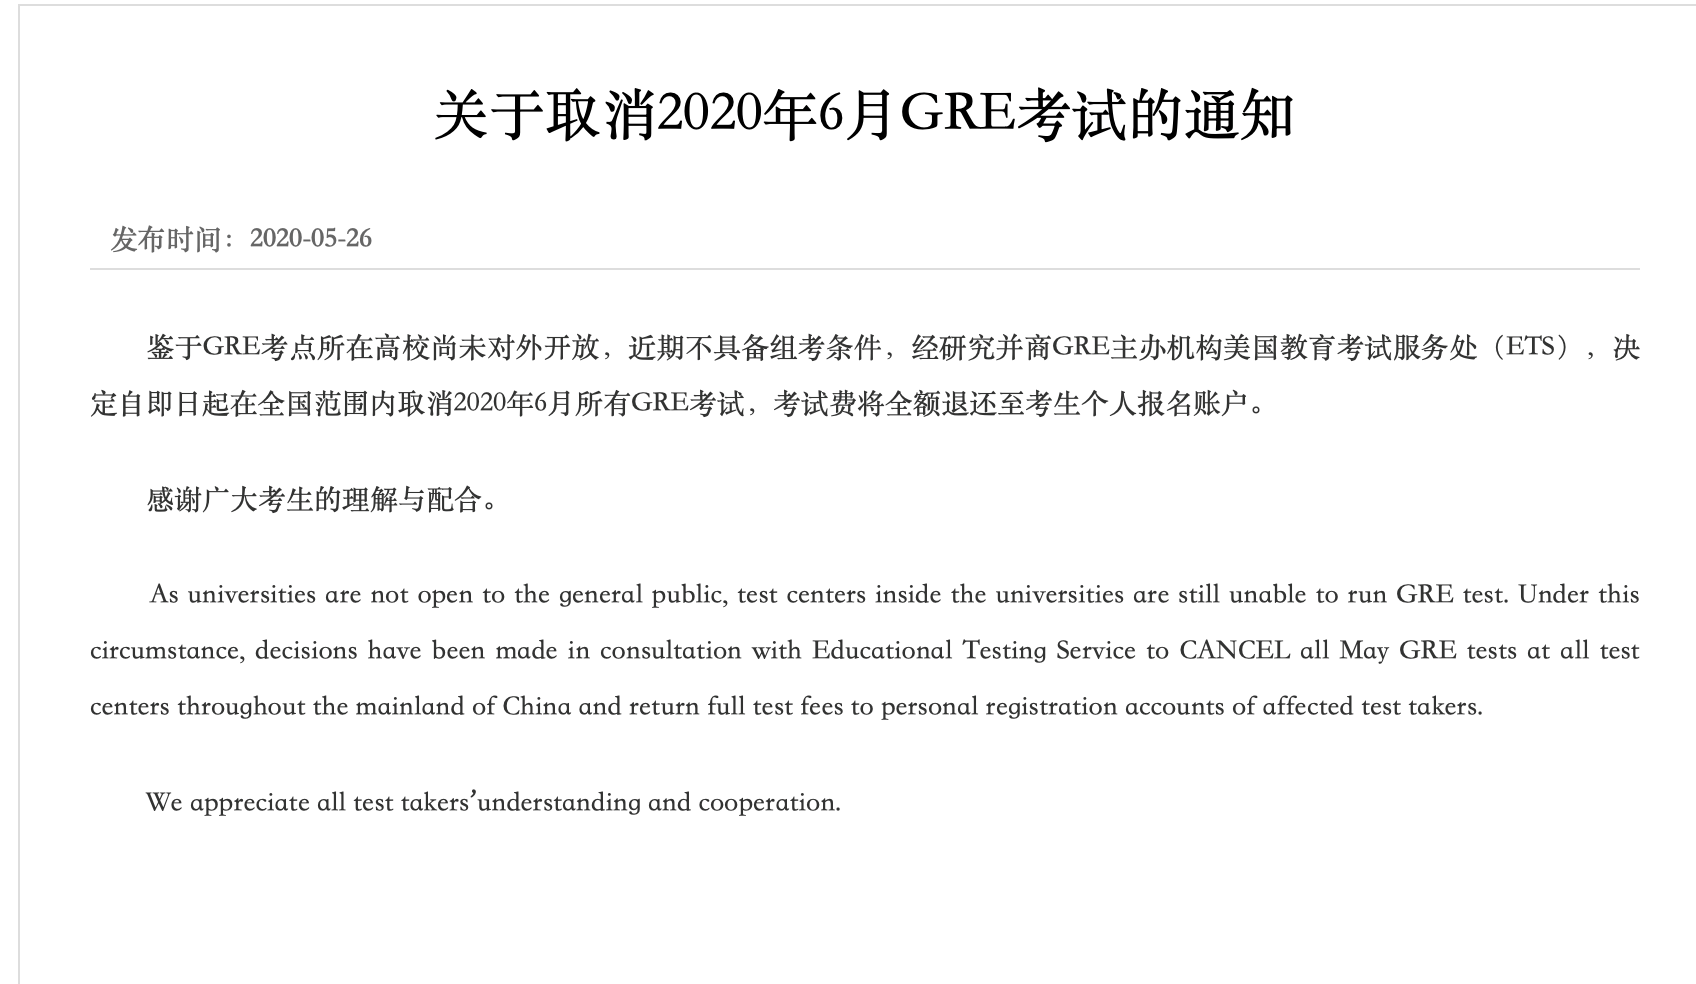 6月雅思/托福/GRE/GMAT官宣确认取消！